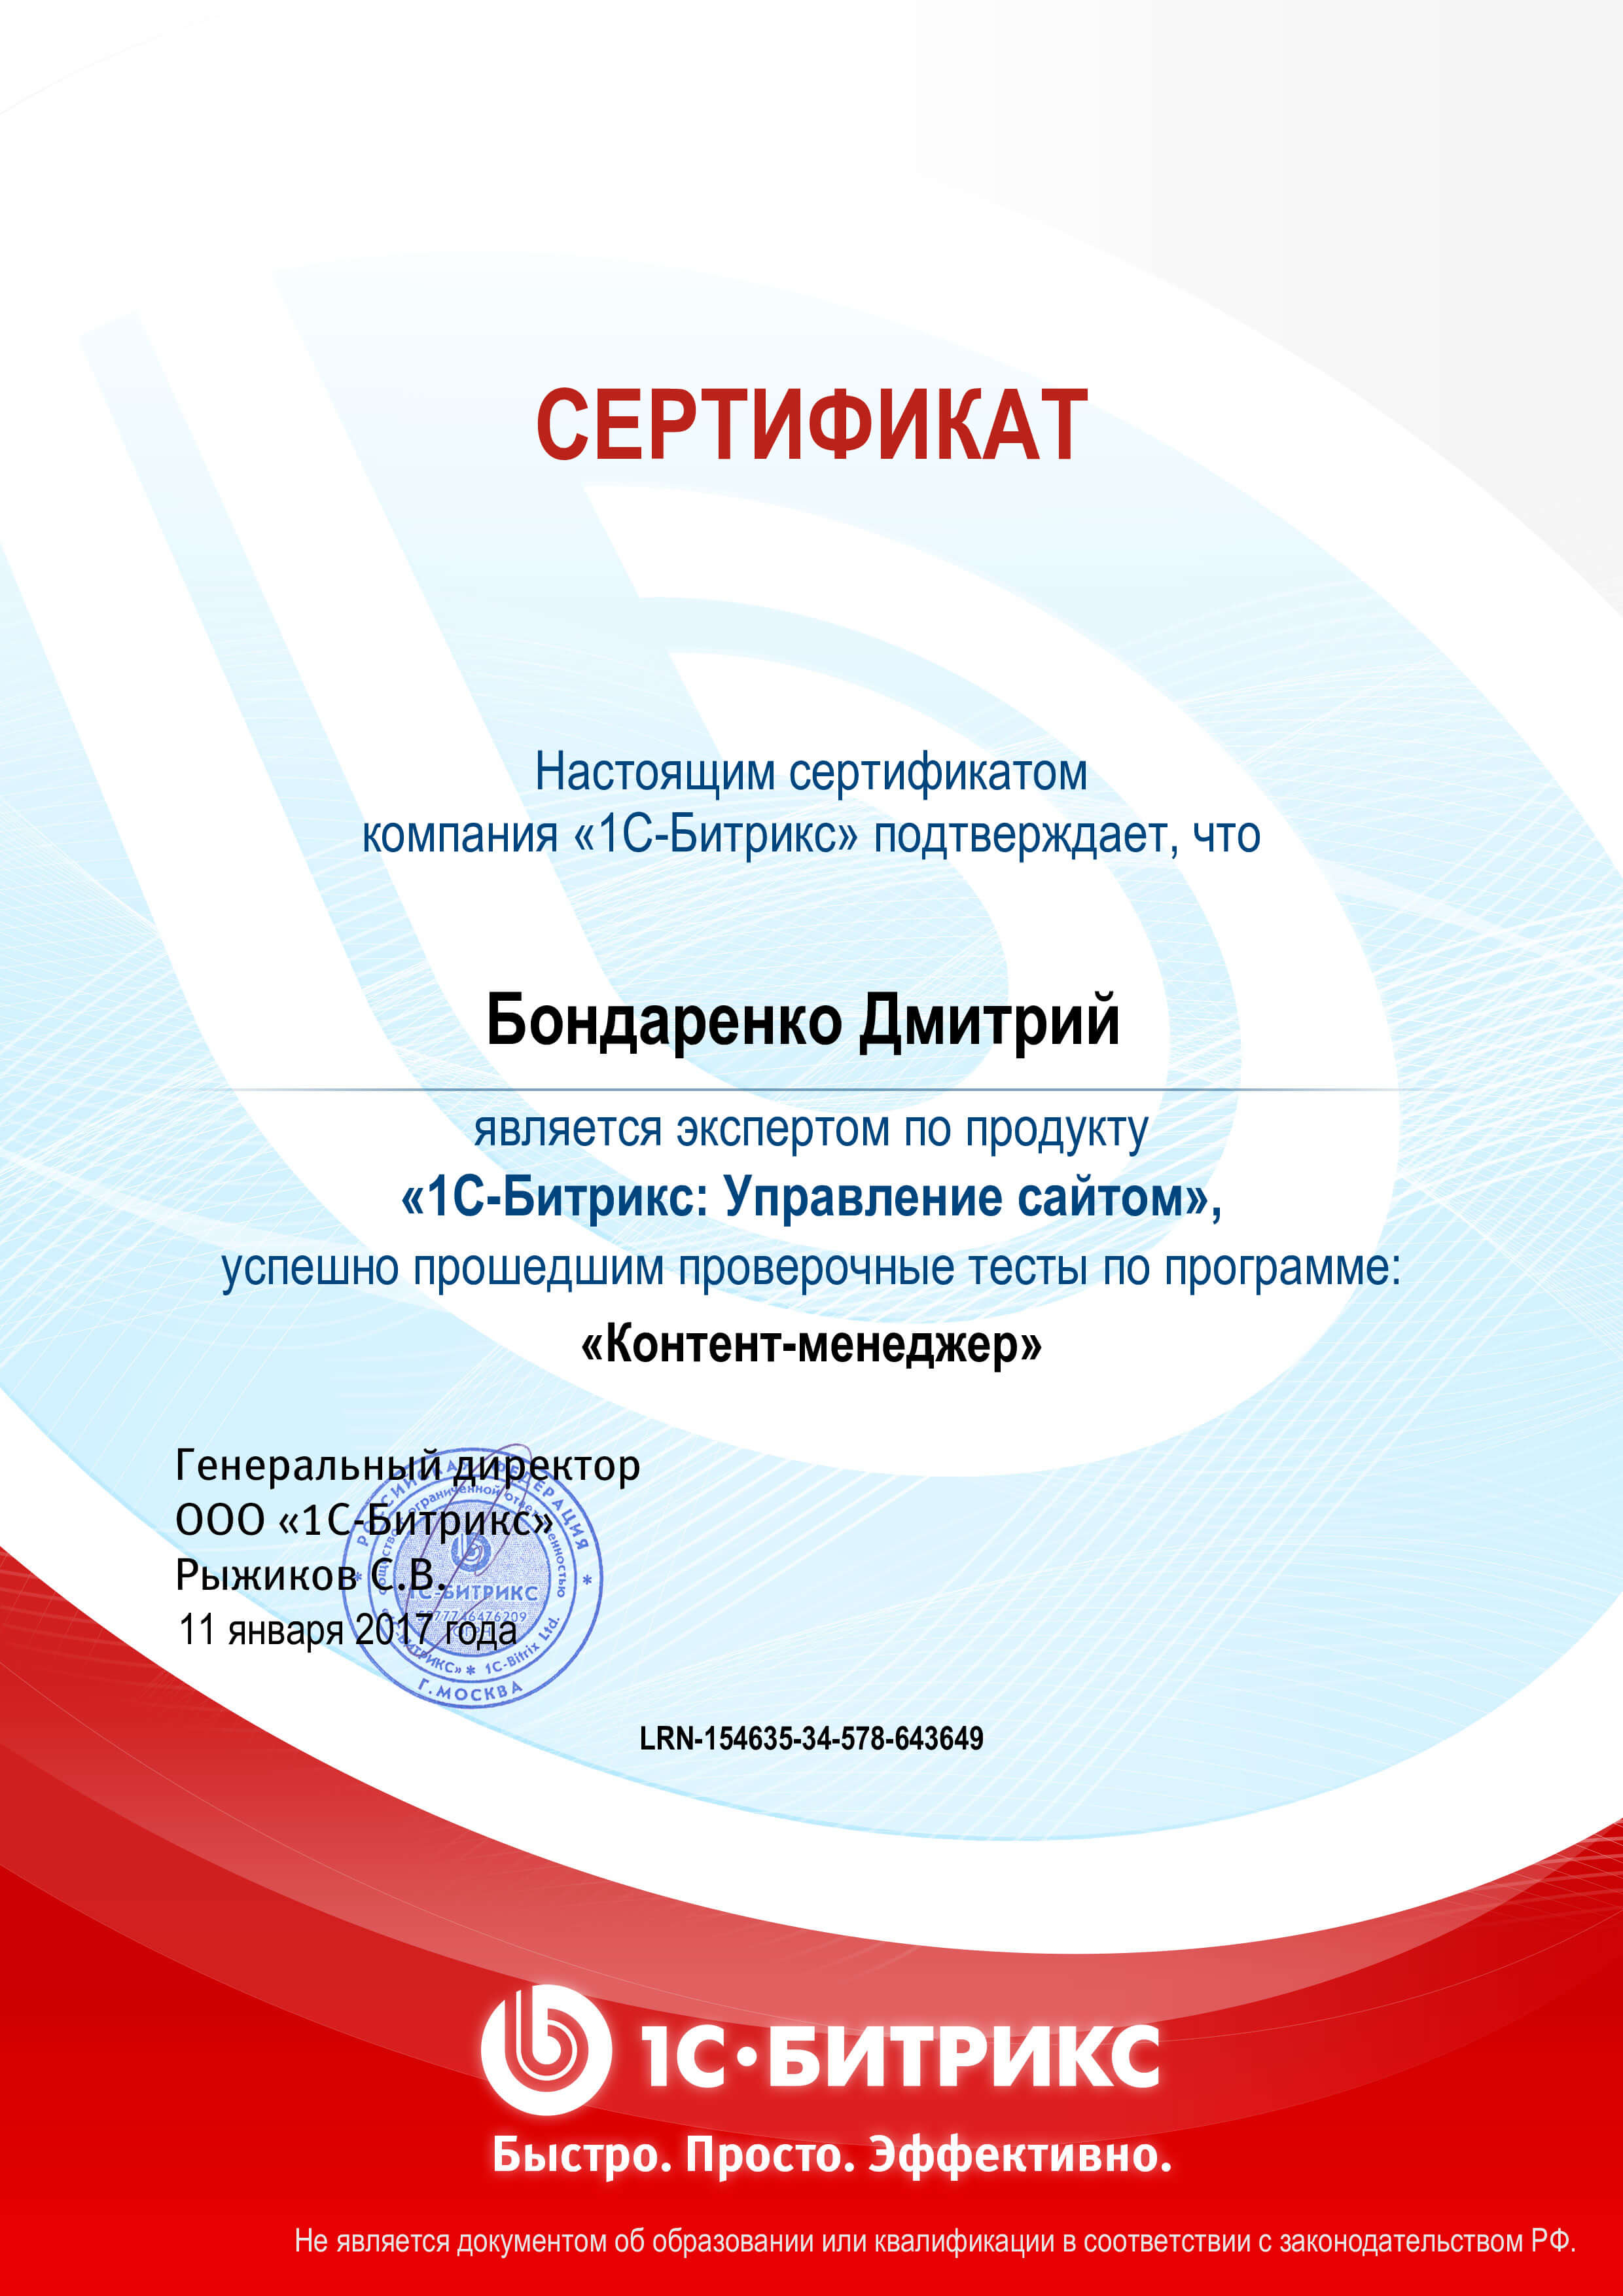 Сертификат “Контент-менеджер”